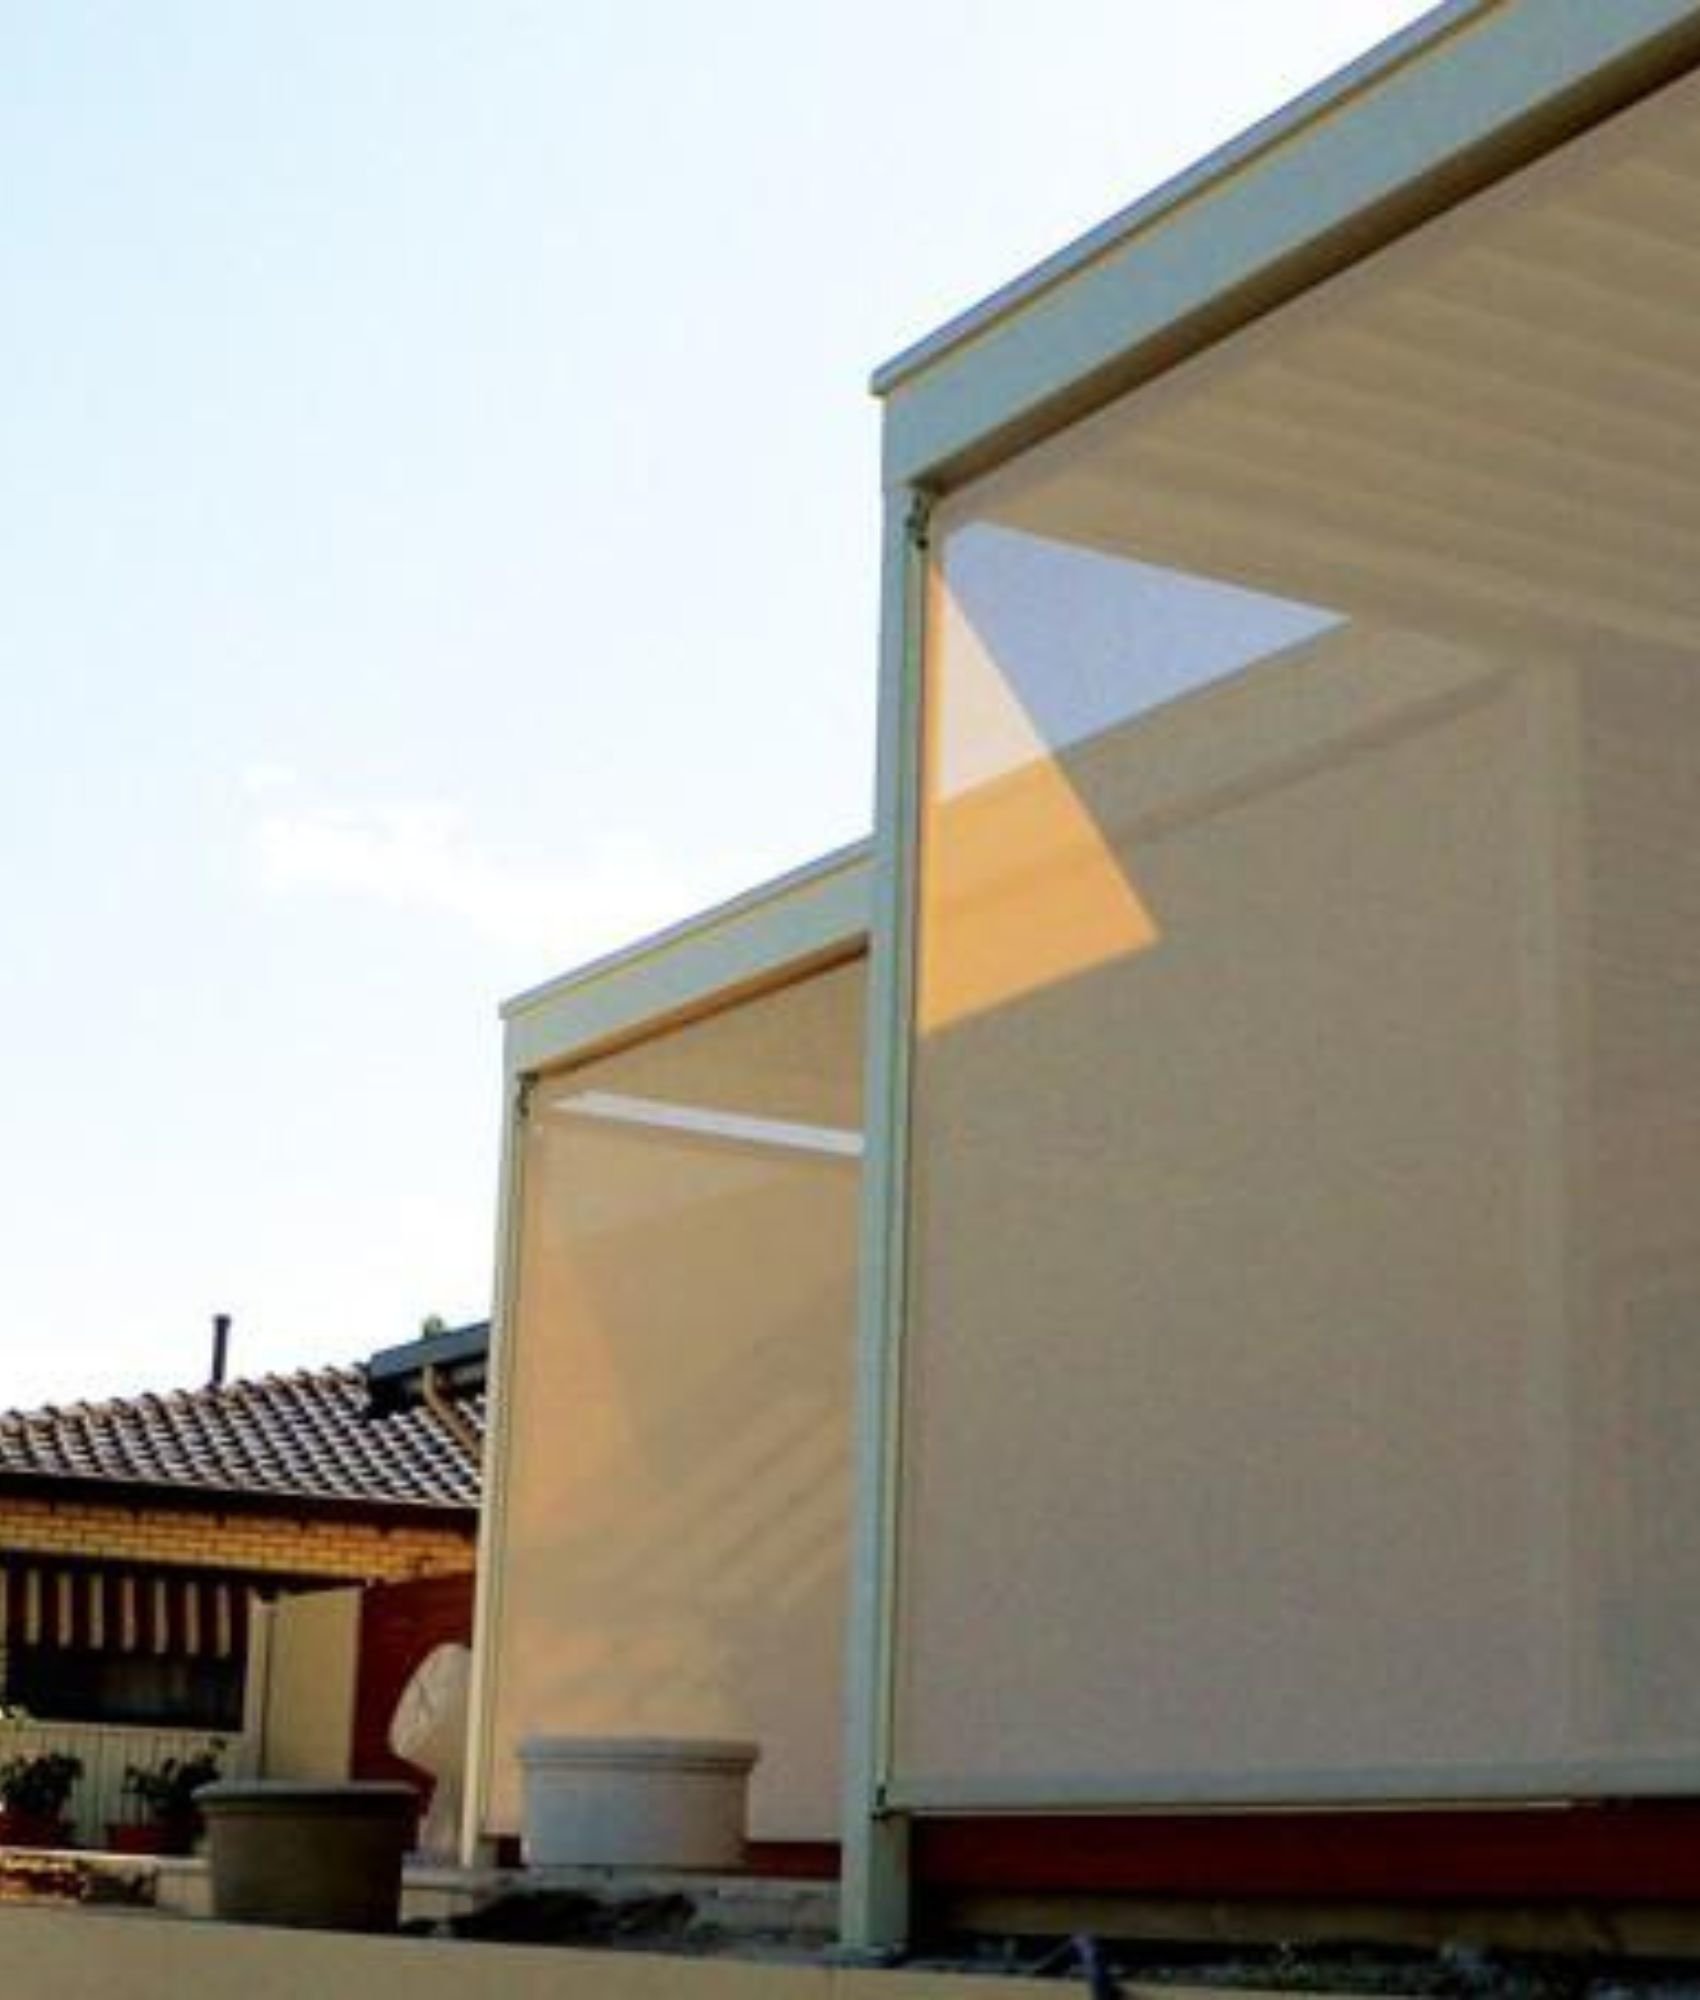 ziptrak outdoor blinds adelaide stan bond 4 | Stan Bond Adelaide